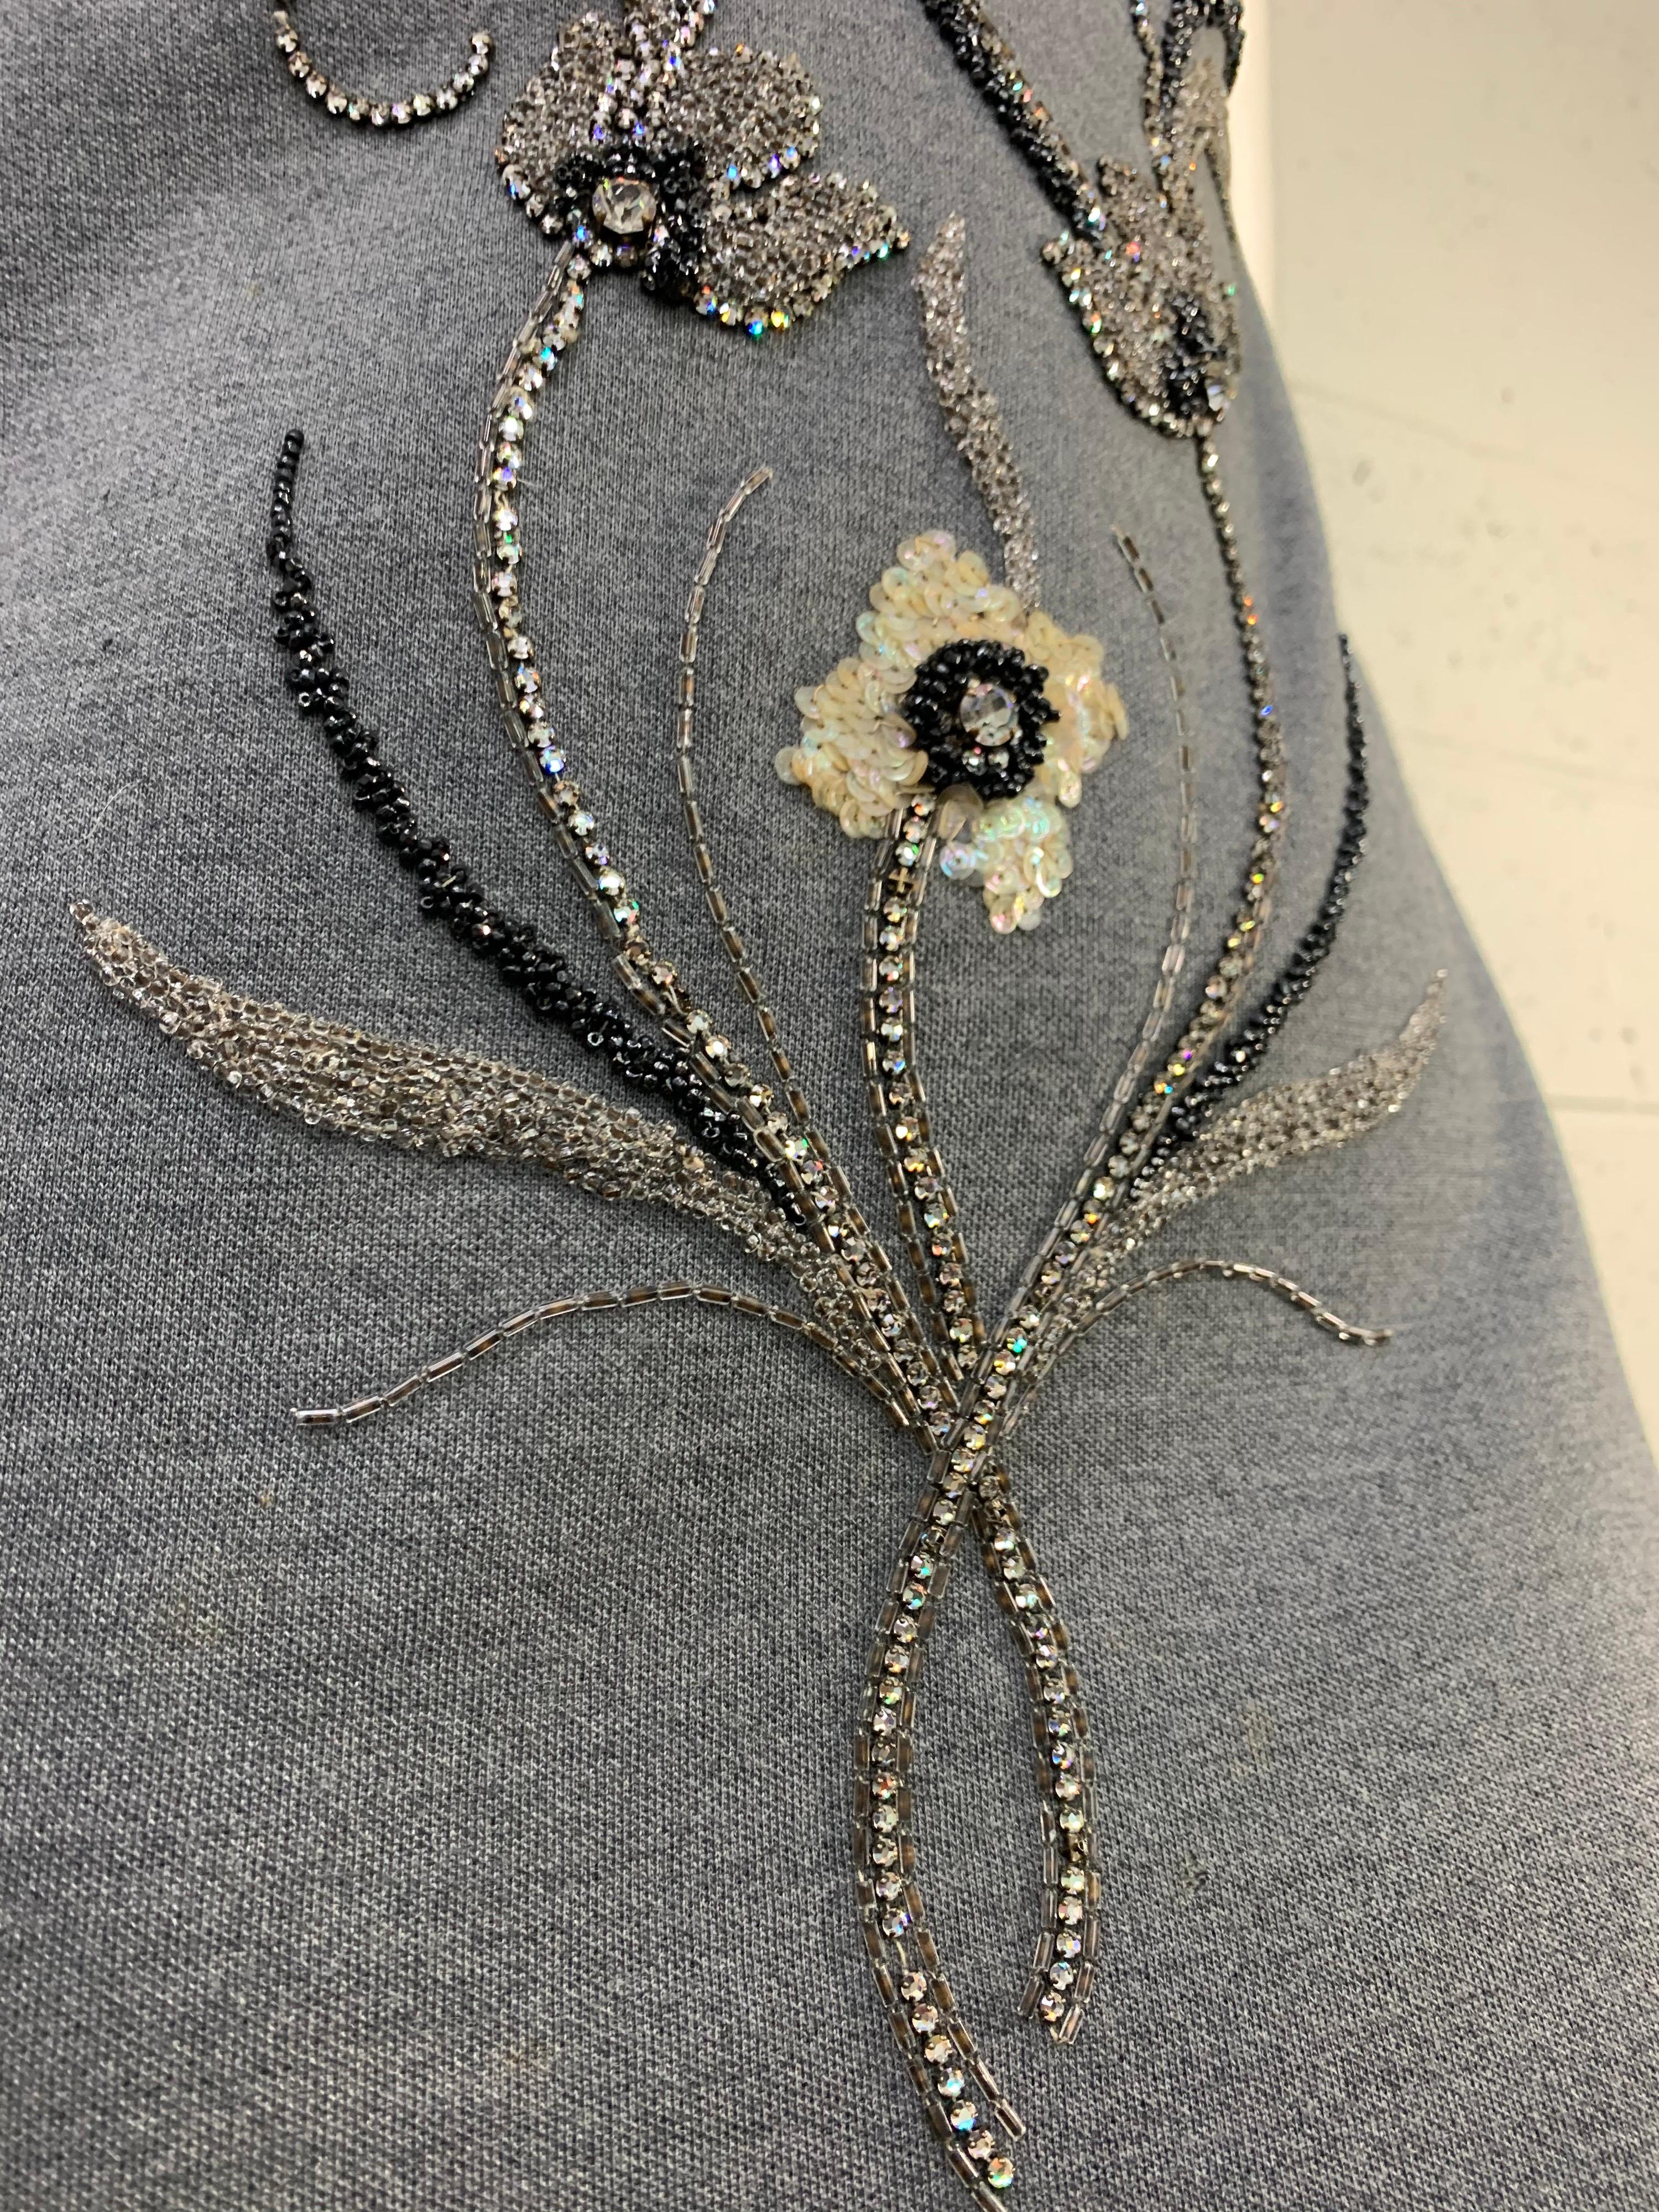 1960s Mr. Blackwell Gray Wool Knit Mini Dress w/ Fabulous Metallic Jewel Florals For Sale 2